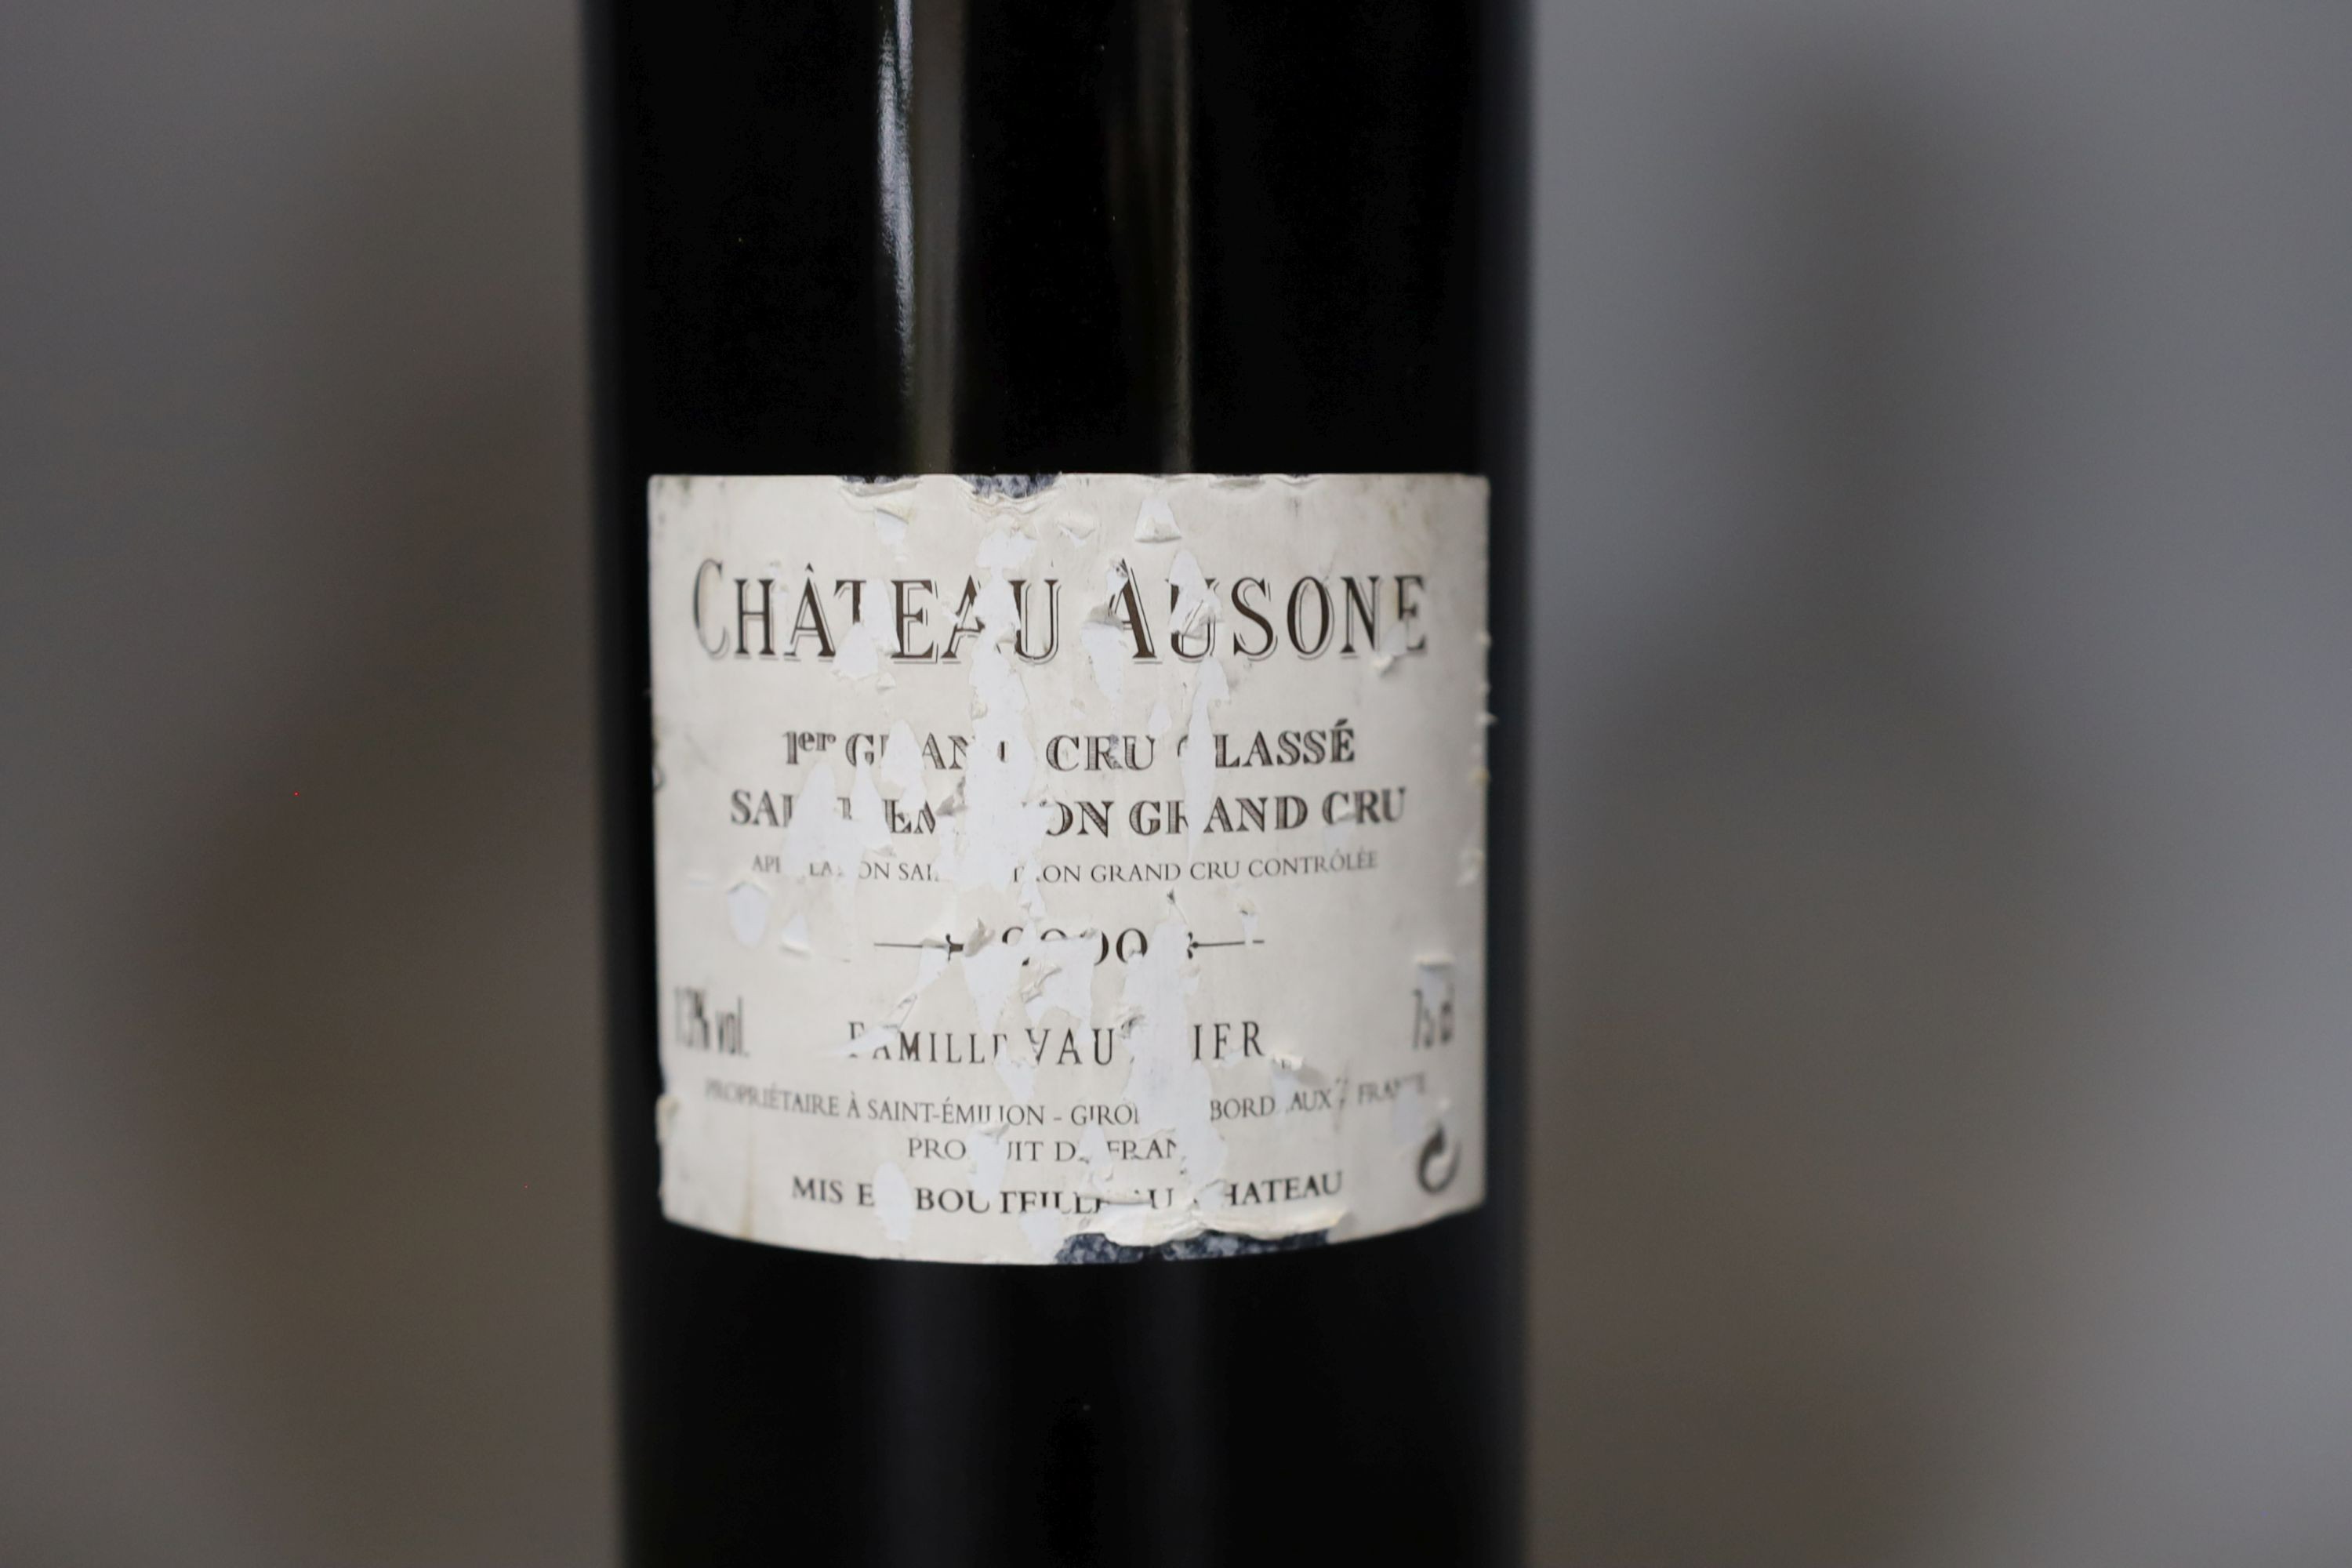 A bottle of Chateau Ausone-St Emilion 1er GCC 75cl - Bild 2 aus 2